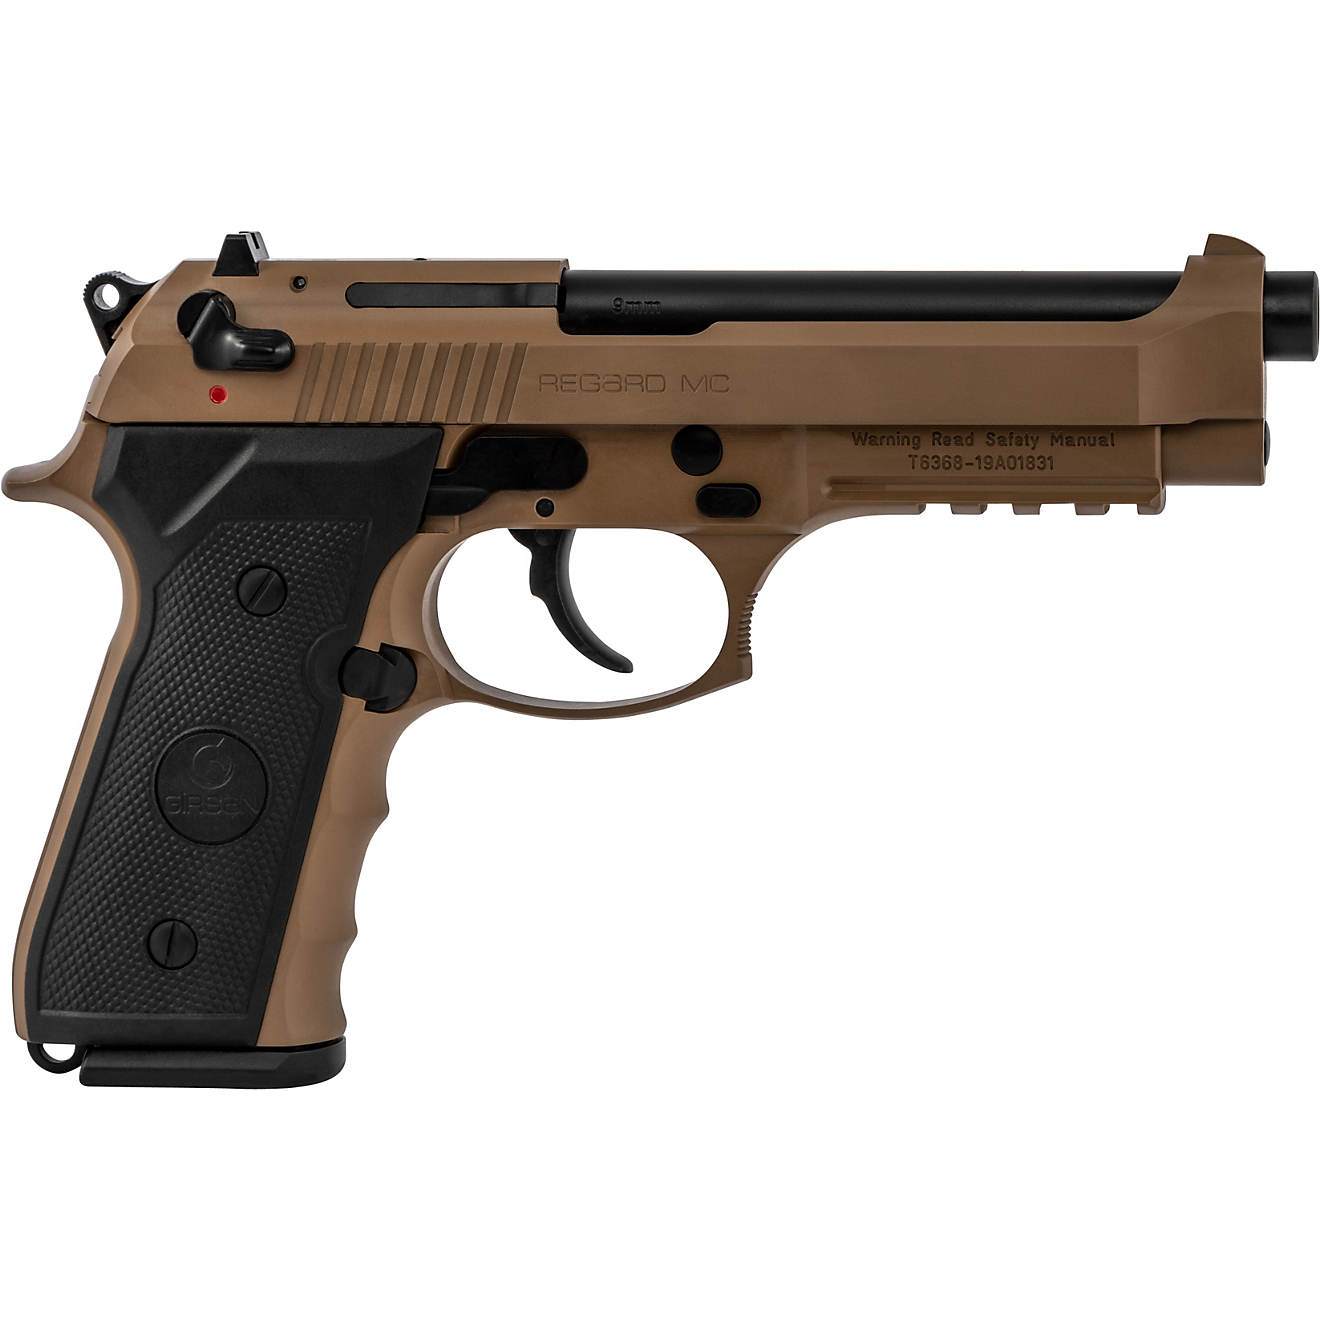 EAA Corp Girsan Regard MC 9mm Luger Pistol                                                                                       - view number 1